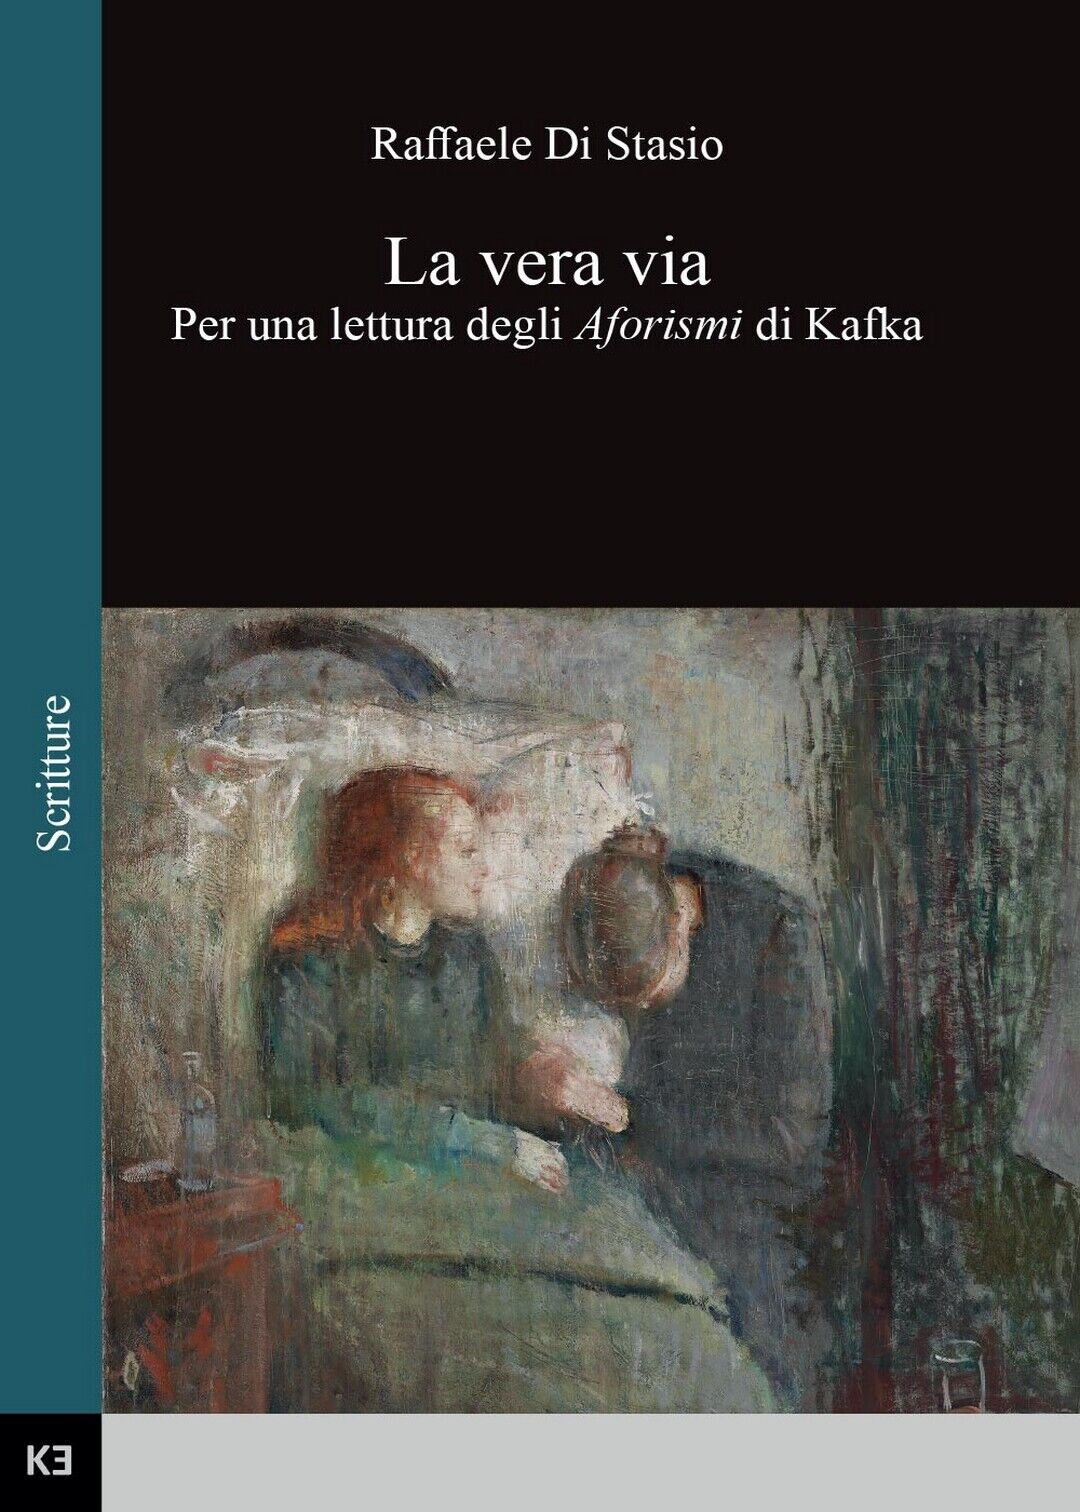 La vera via. Per una lettura degli Aforismi di Kafka, Raffaele Di Stasio,  2016